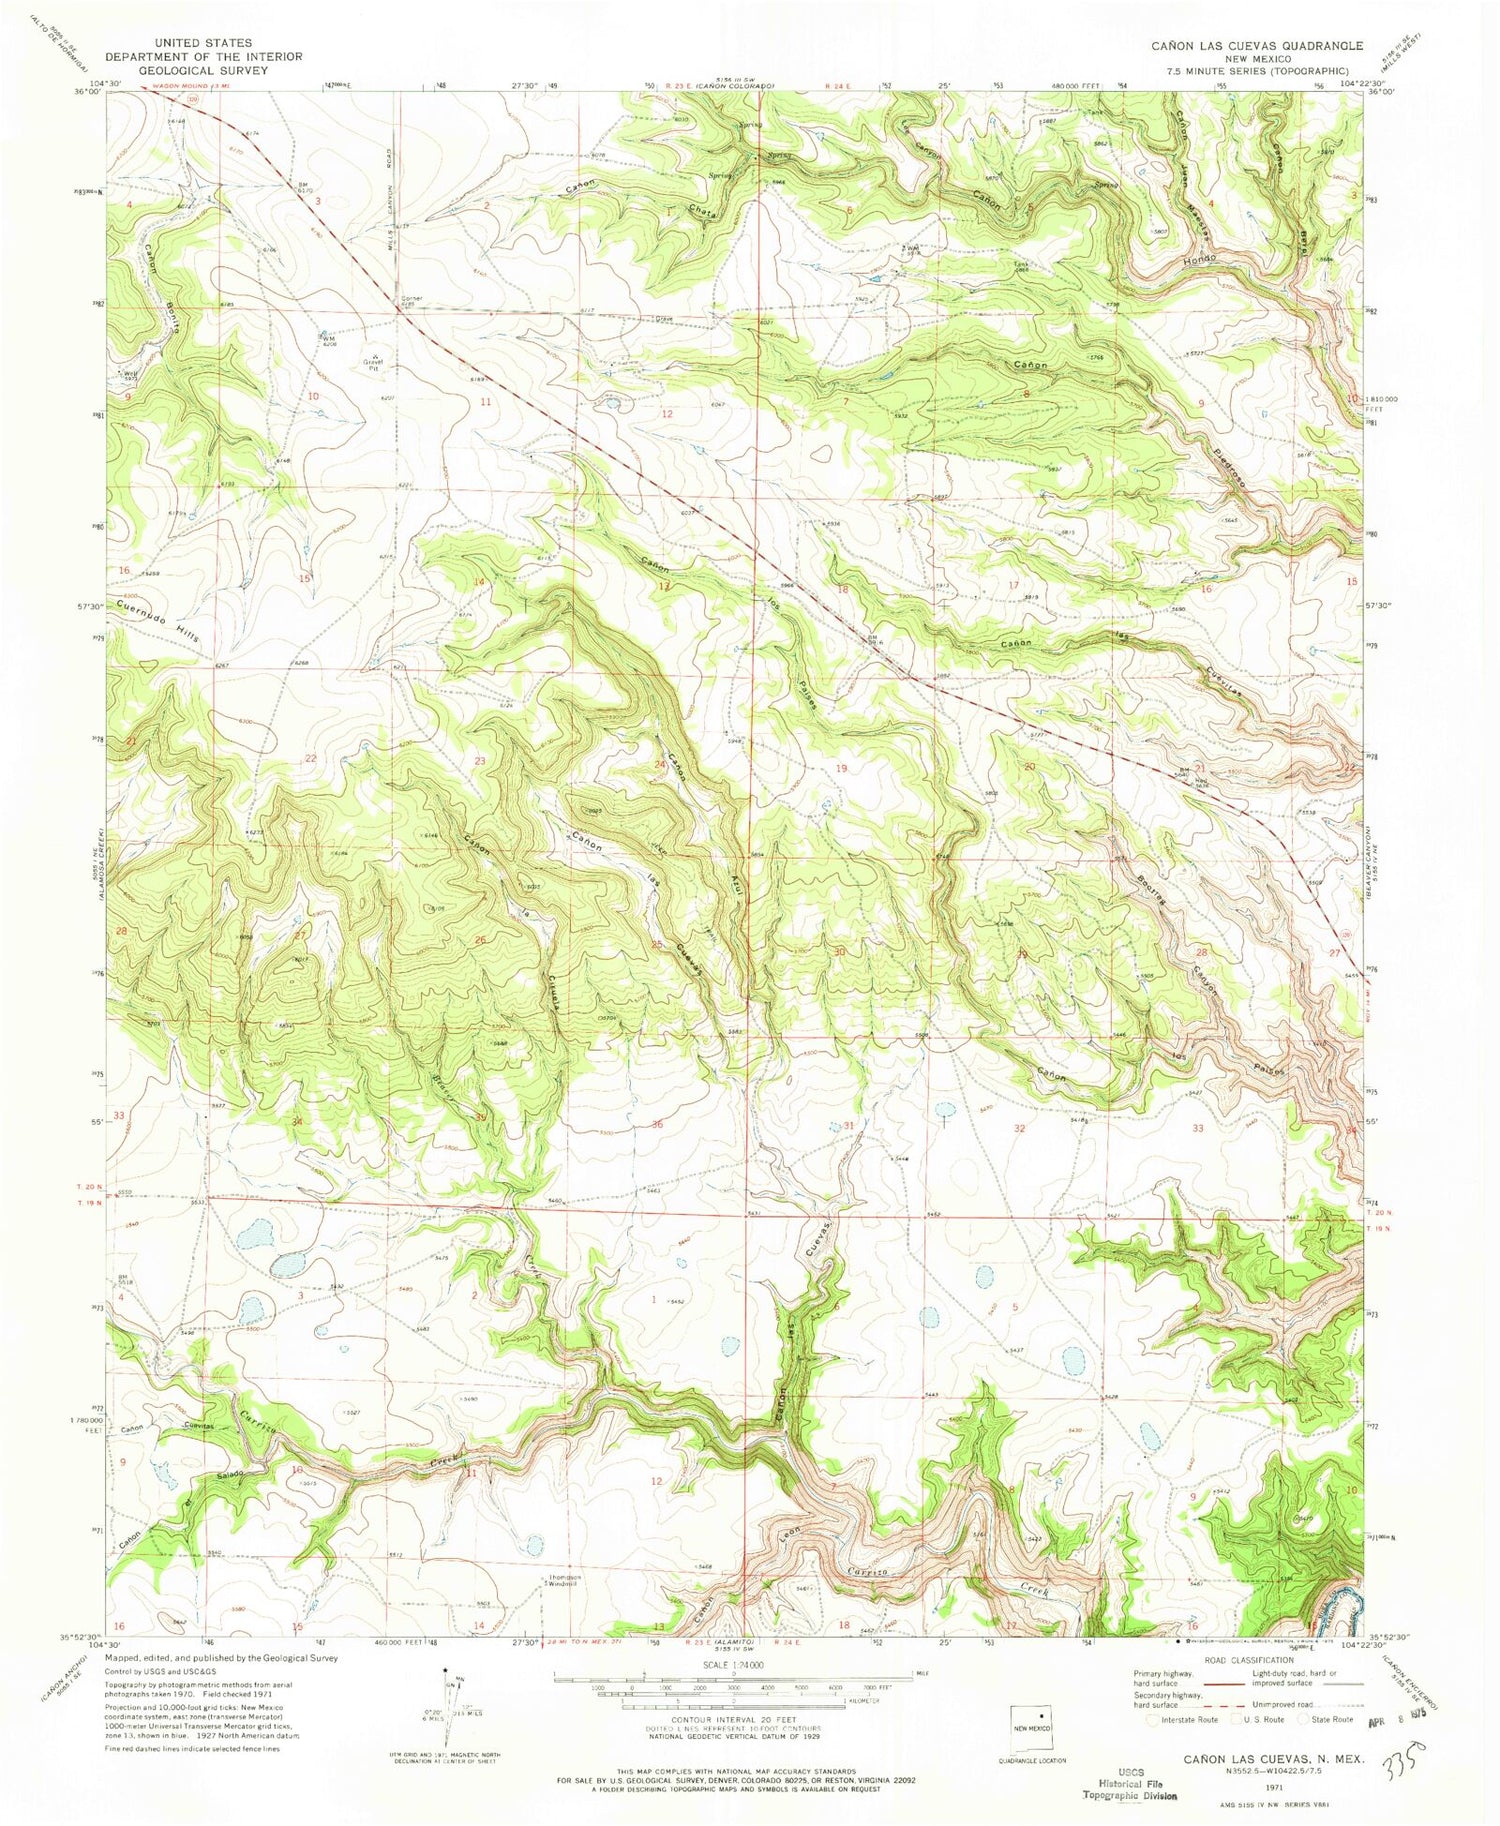 Classic USGS Canon Las Cuevas New Mexico 7.5'x7.5' Topo Map Image